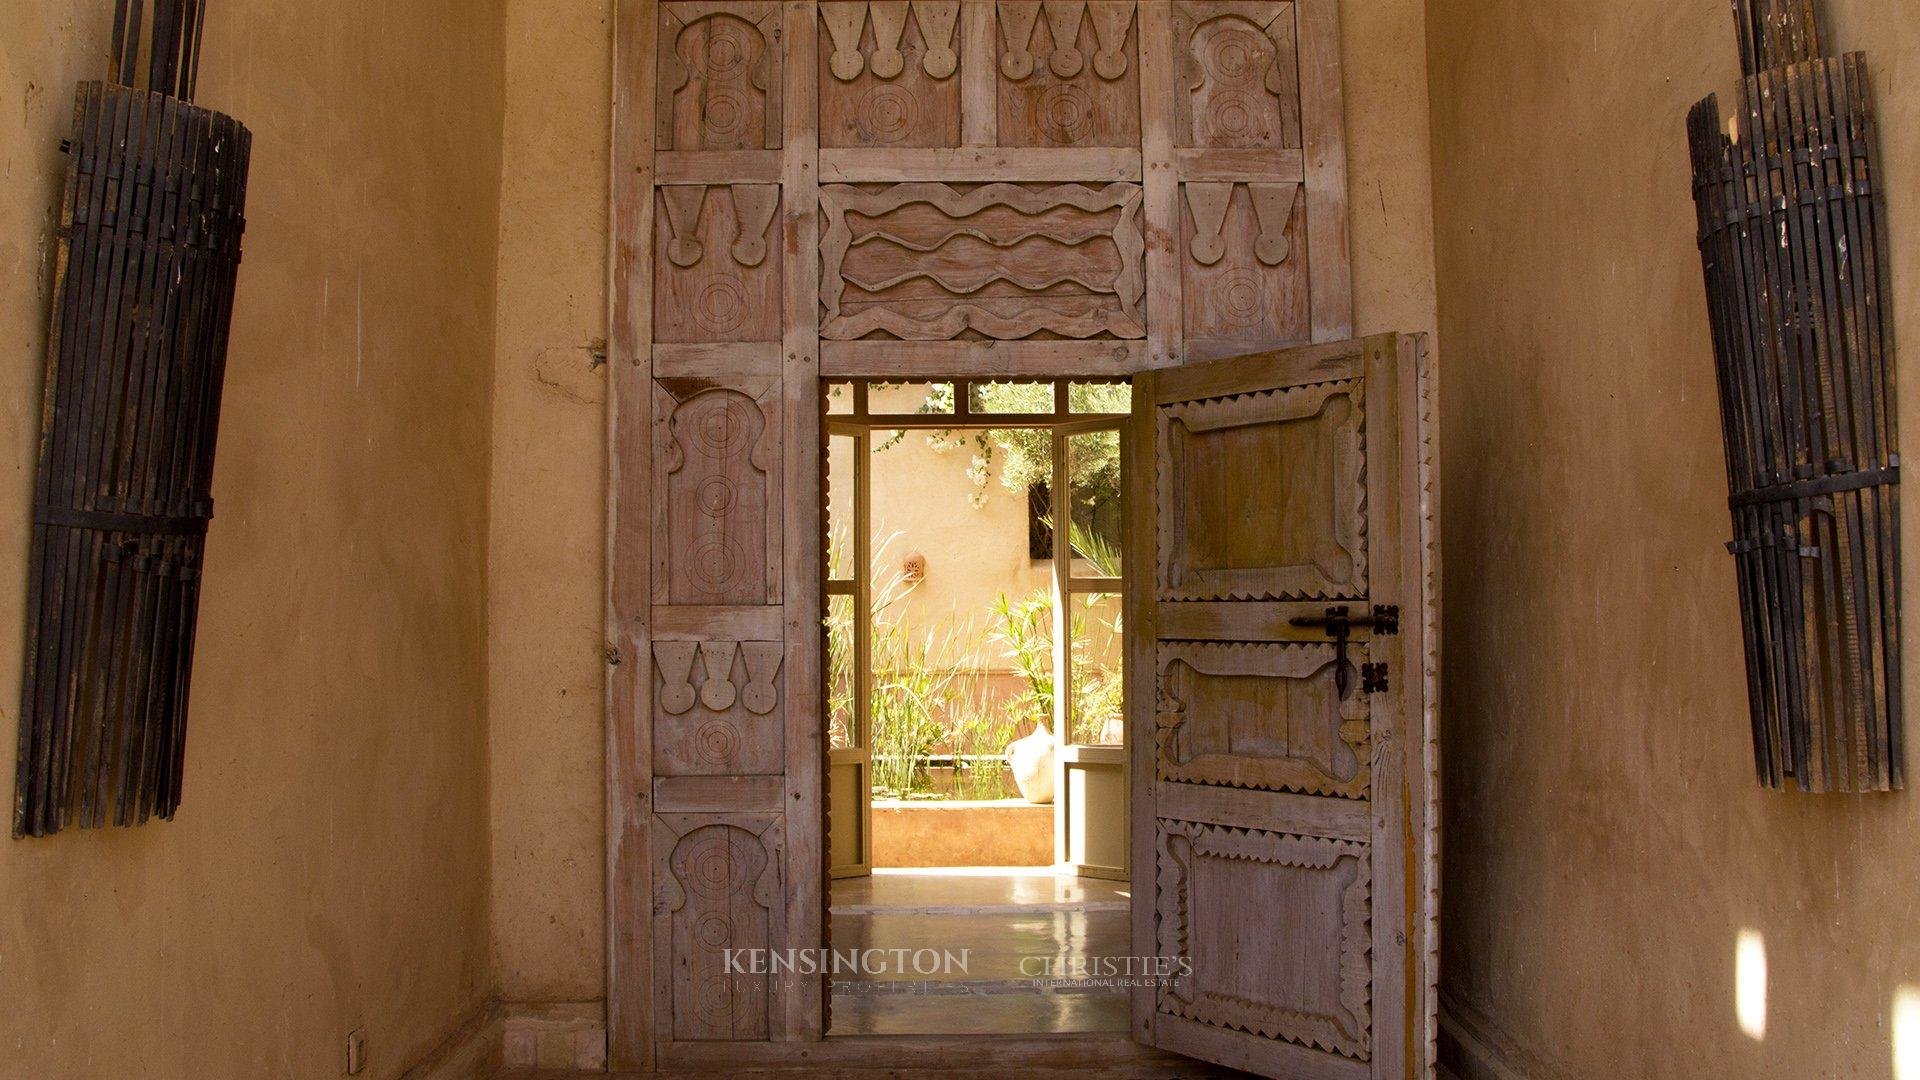 Xandra Villa in Marrakech, Morocco